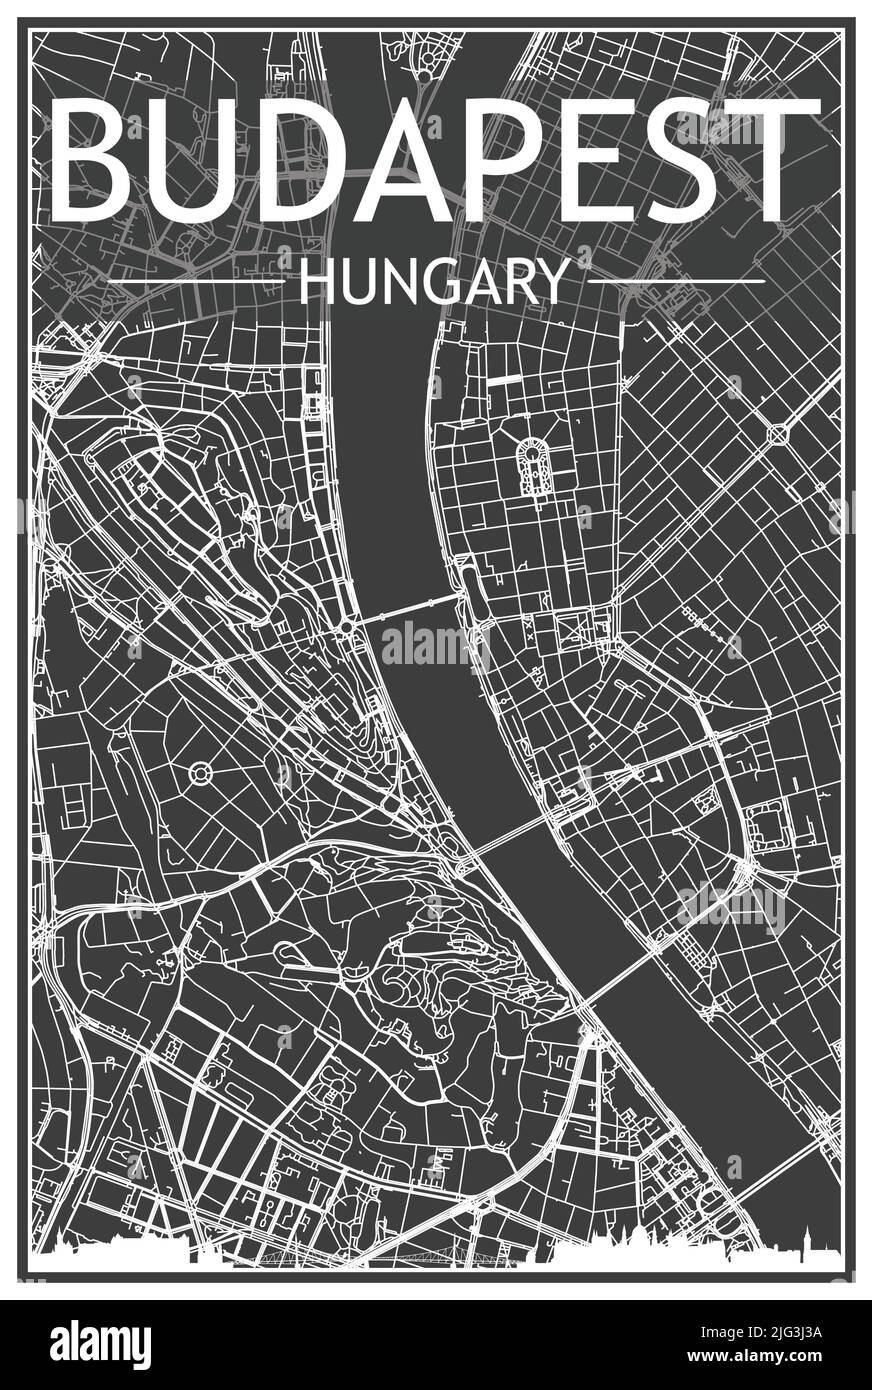 Póster de la ciudad con impresión oscura con horizonte panorámico y calles dibujadas a mano sobre fondo gris oscuro del centro DE BUDAPEST, HUNGRÍA Ilustración del Vector